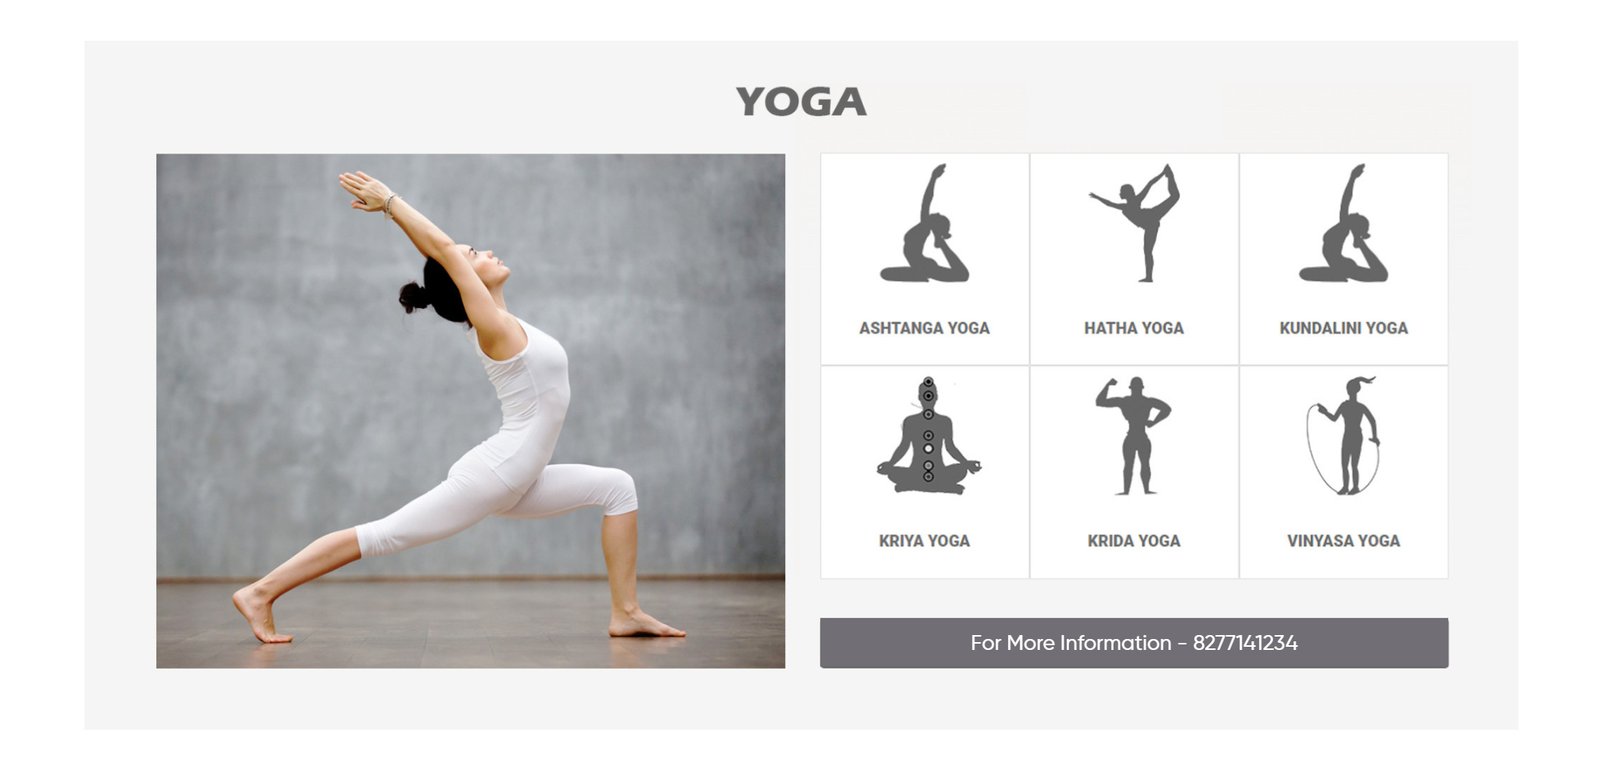 Page 18 | Kriya Yoga Images - Free Download on Freepik